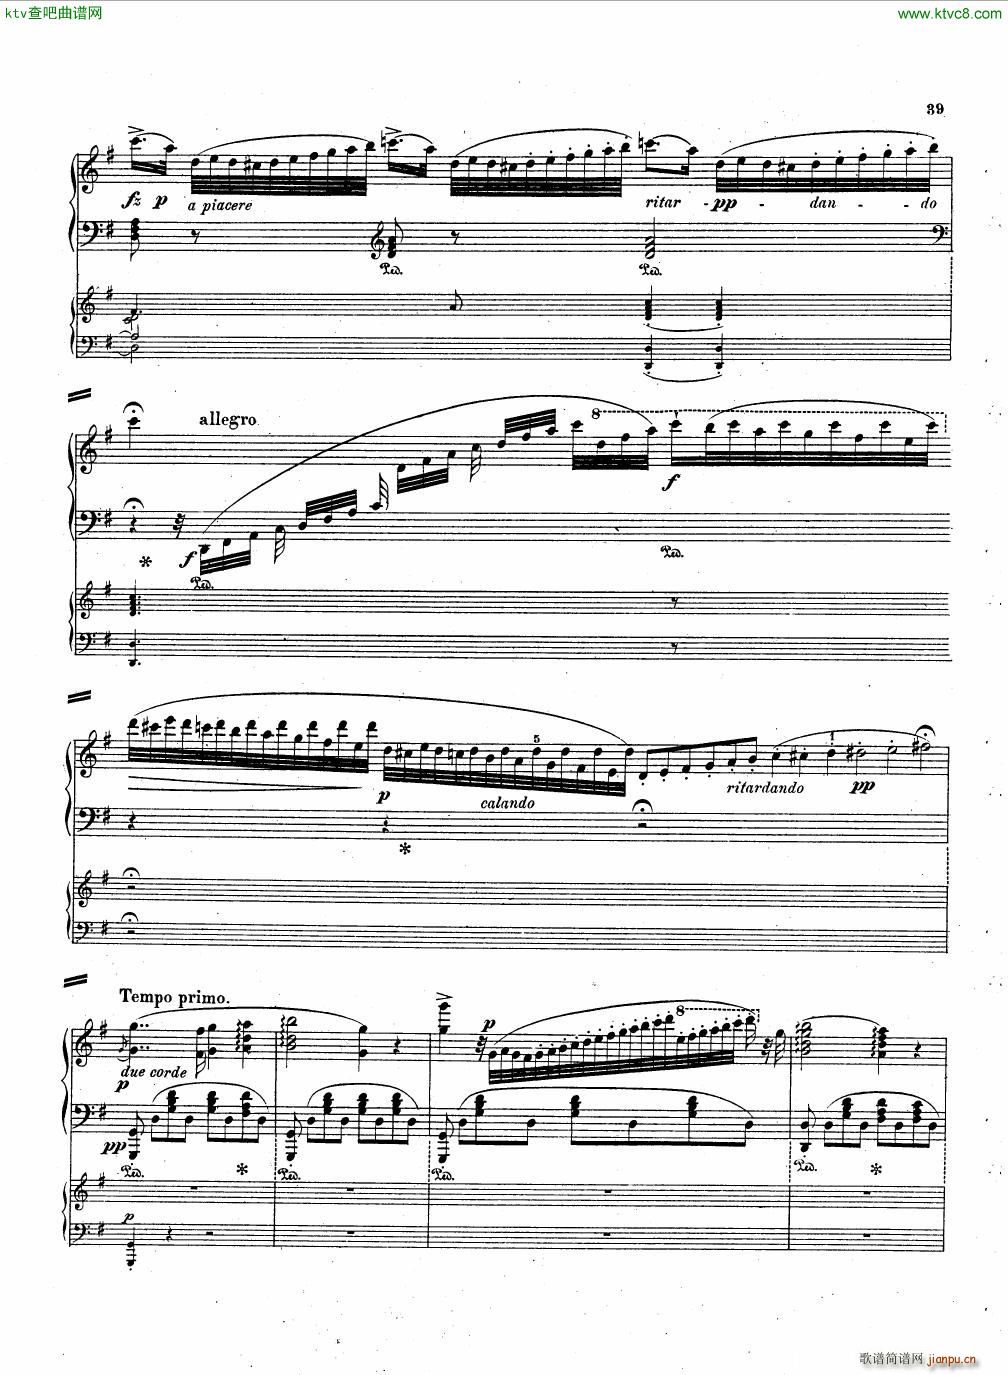 Hummel Piano concerto Op 89 II()1